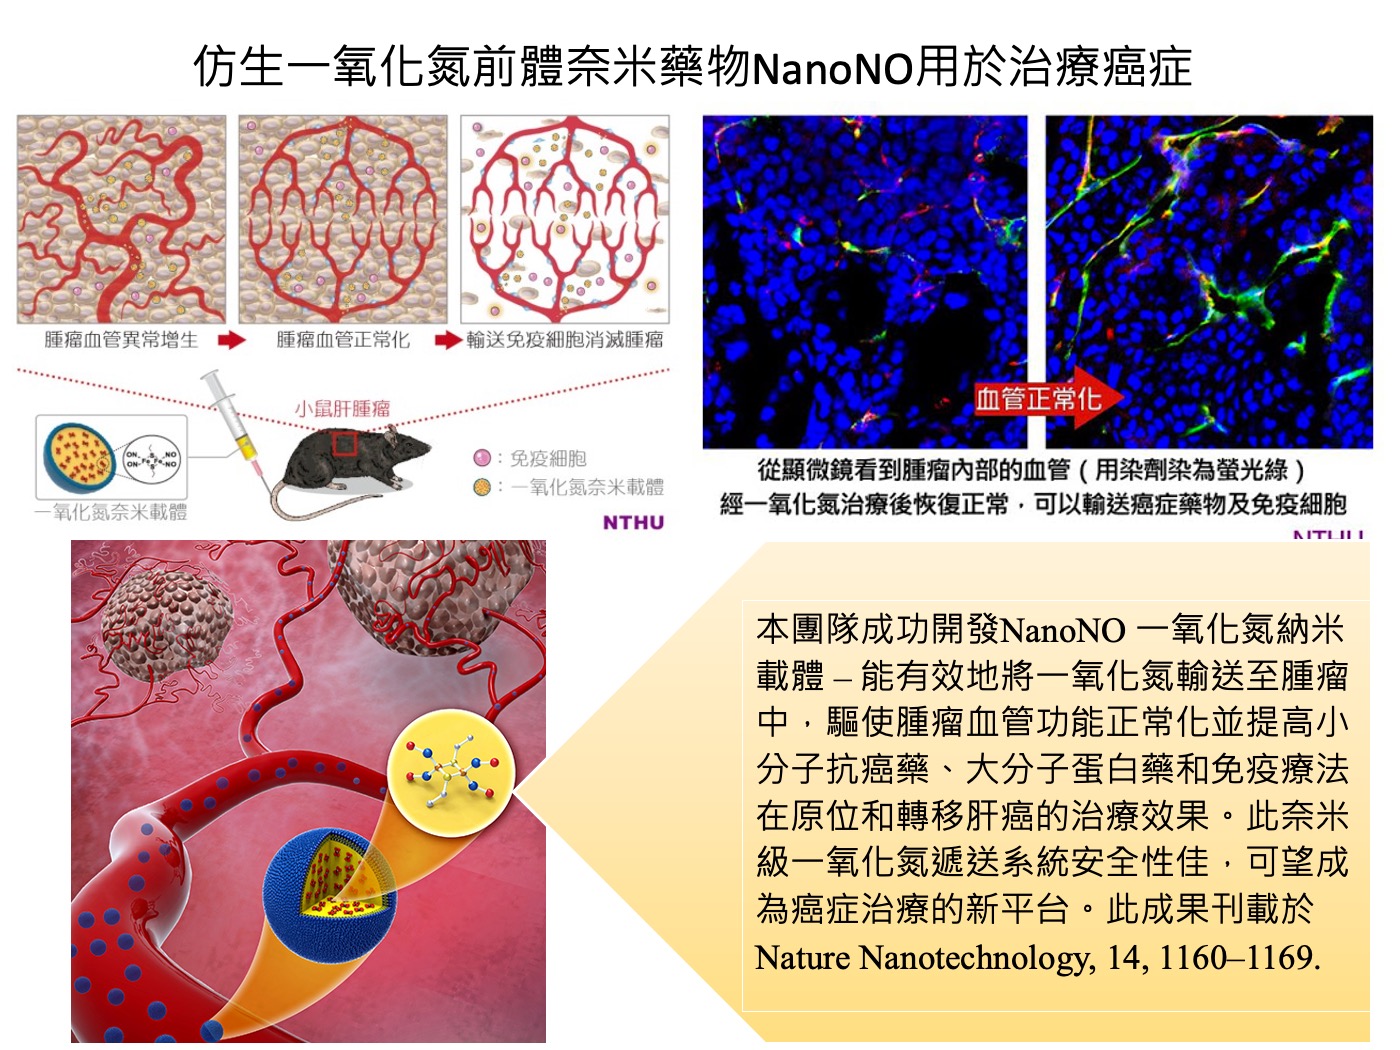 仿生一氧化氮前體奈米藥物NanoNO用於治療癌症